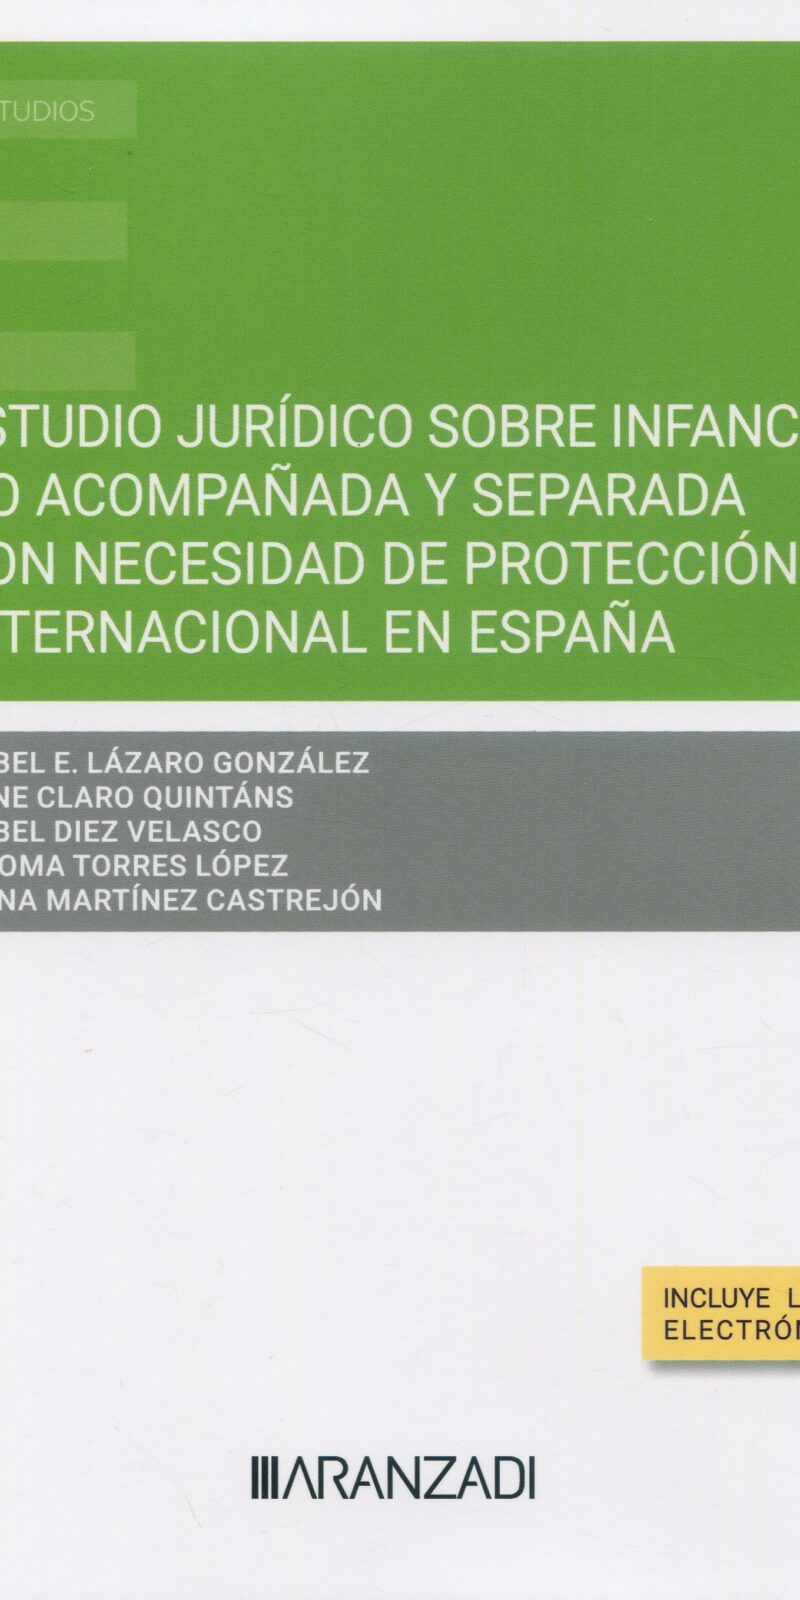 Estudio jurídico sobre infancia no acompañada y separada con necesidad de protección internacional en España